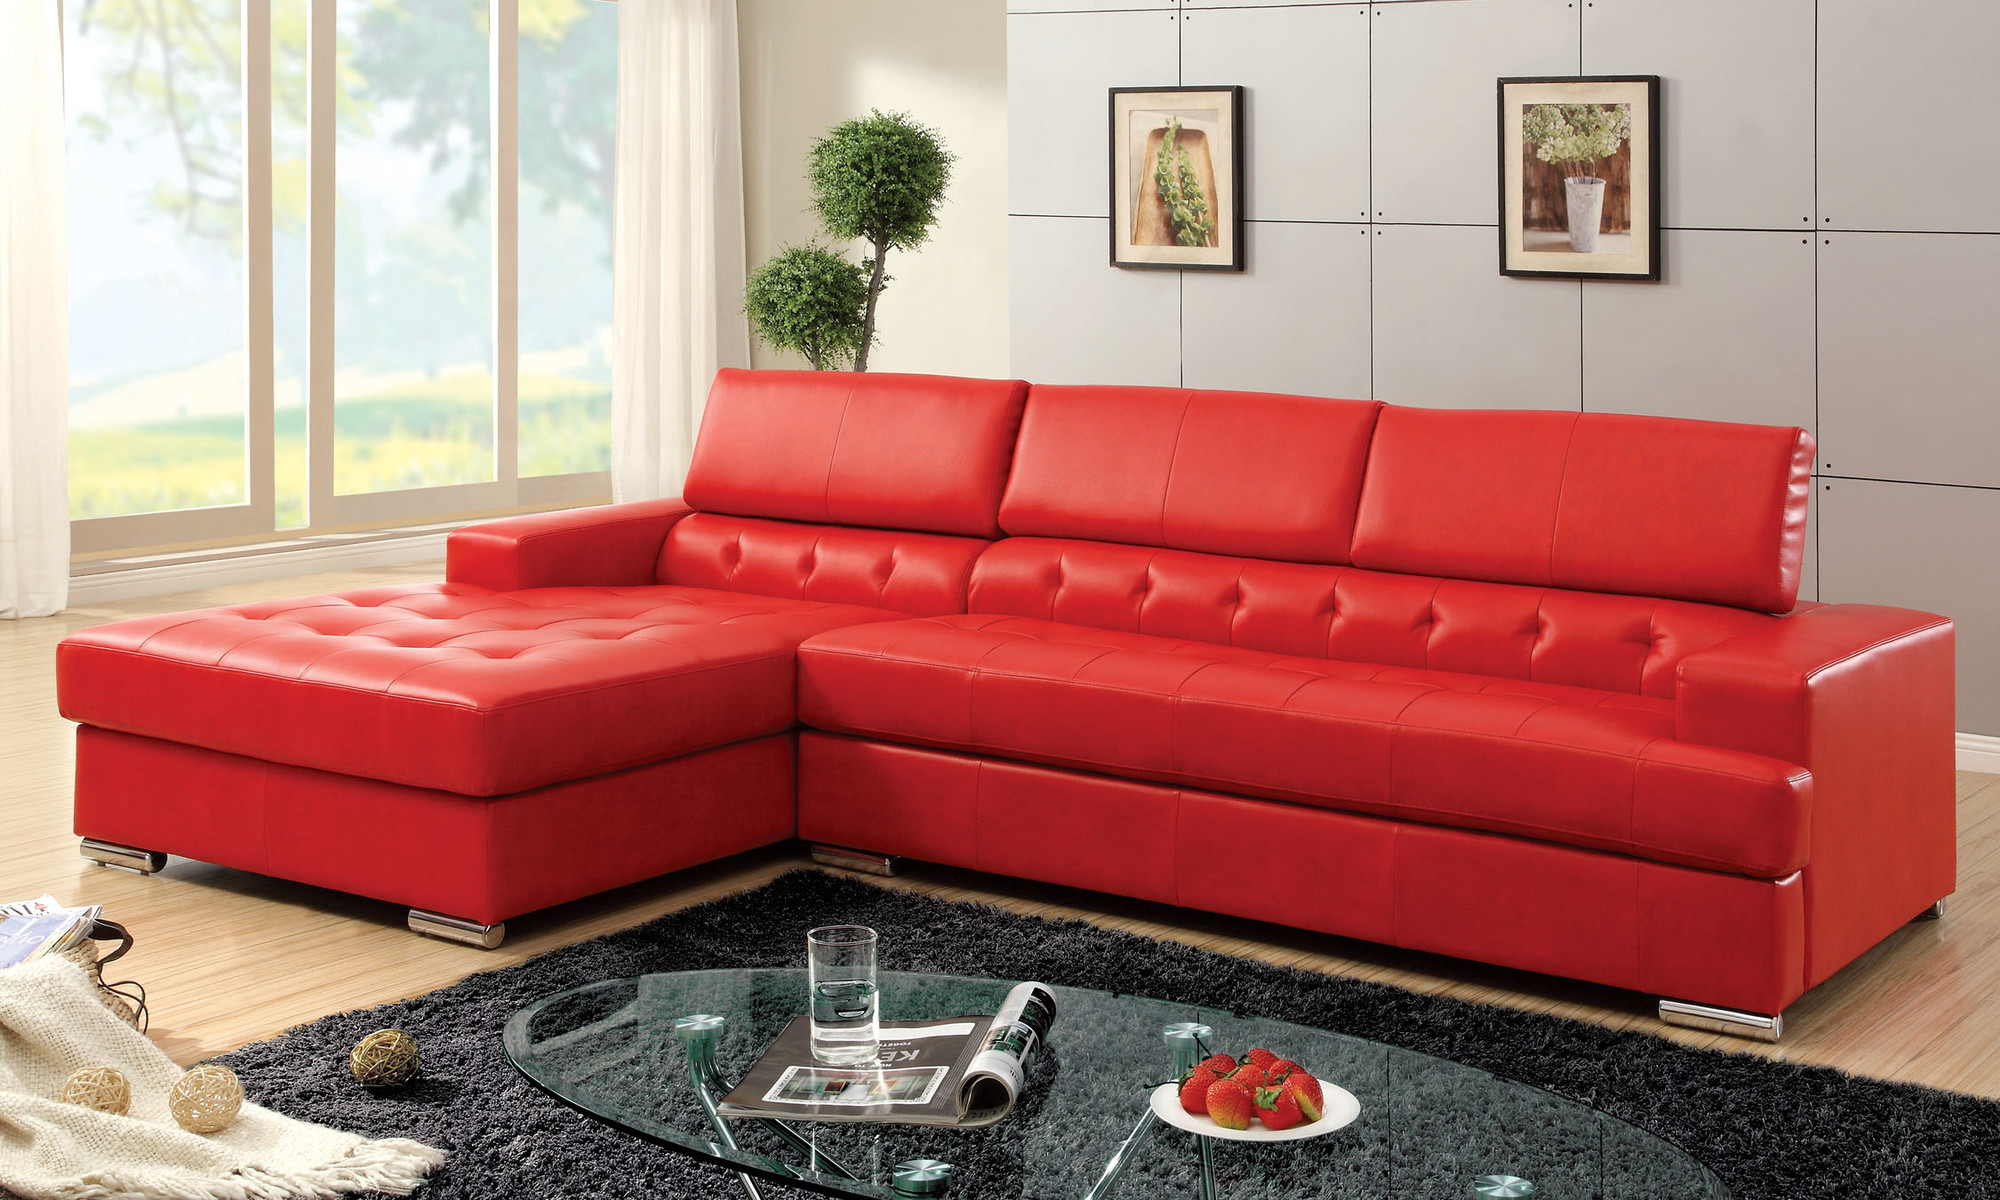 tufted leather sofa sets